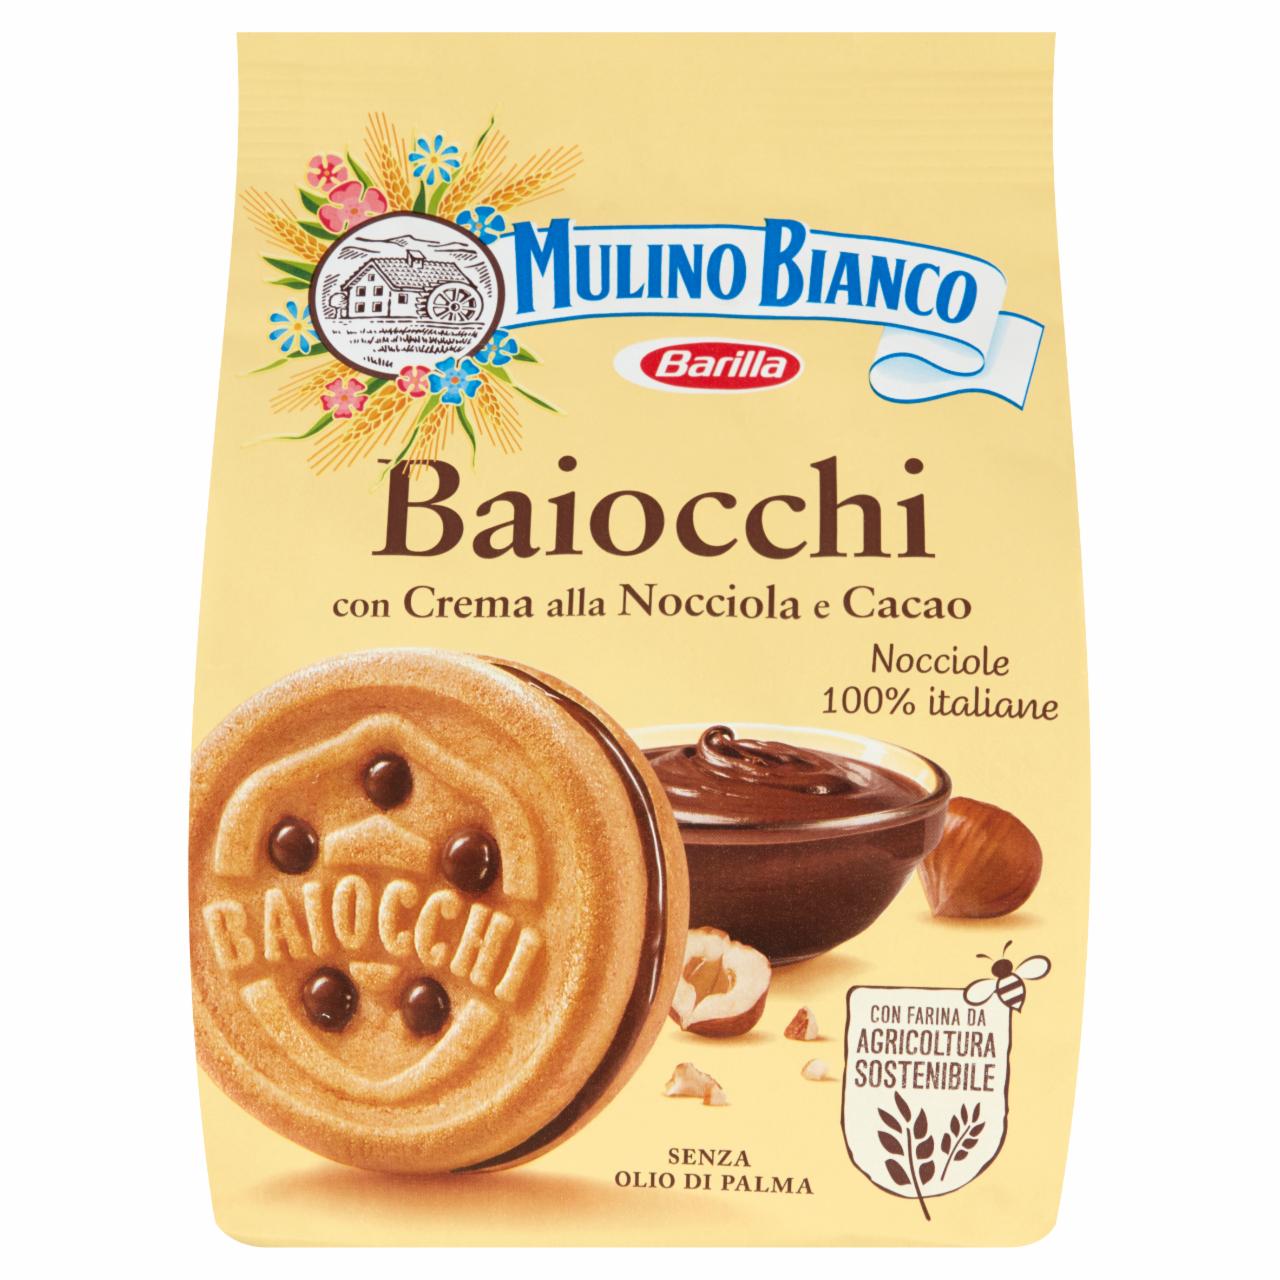 Képek - Mulino Bianco Baiocchi mogyorós és kakaós krémmel töltött édes keksz 260 g